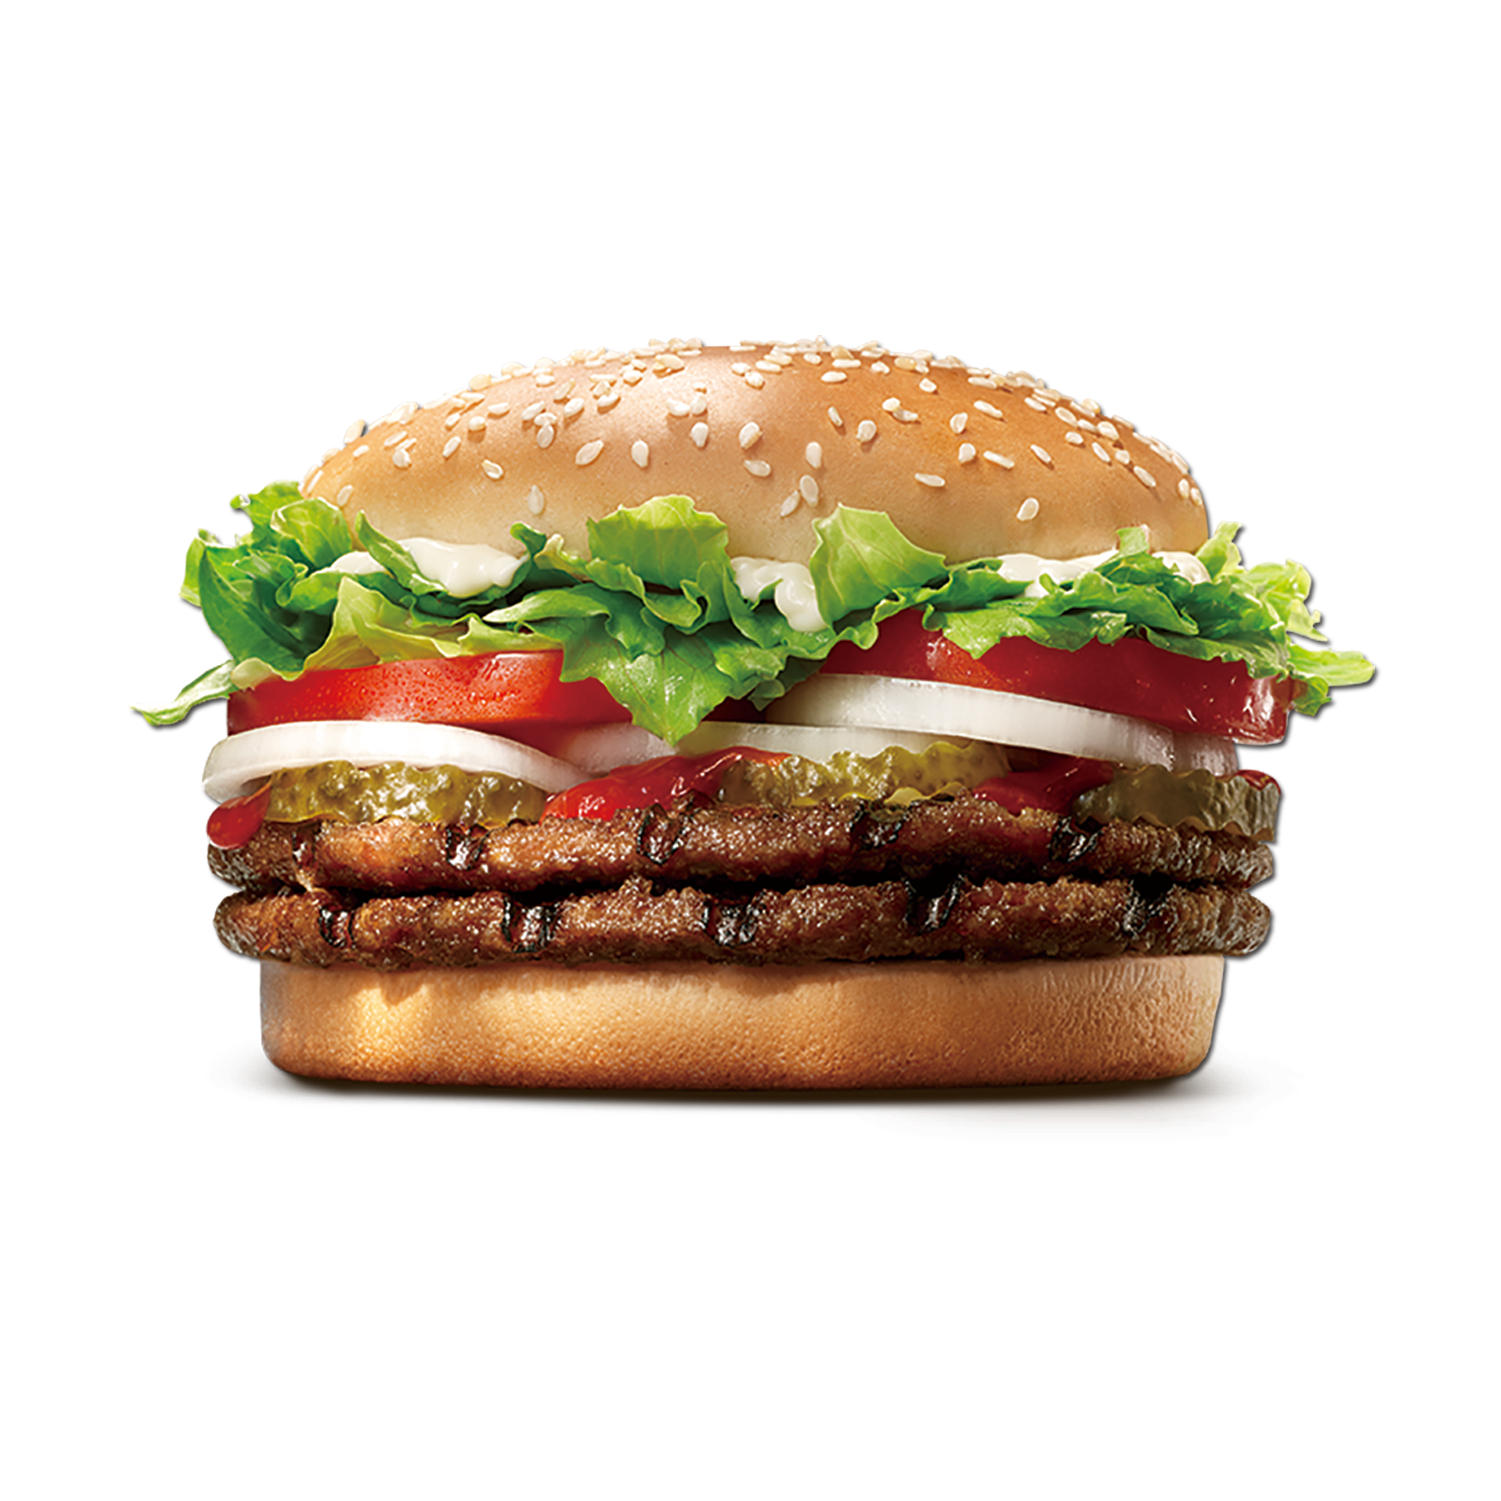 King Whopper Hamburger Burgers Food Cheeseburger Fast PNG Image